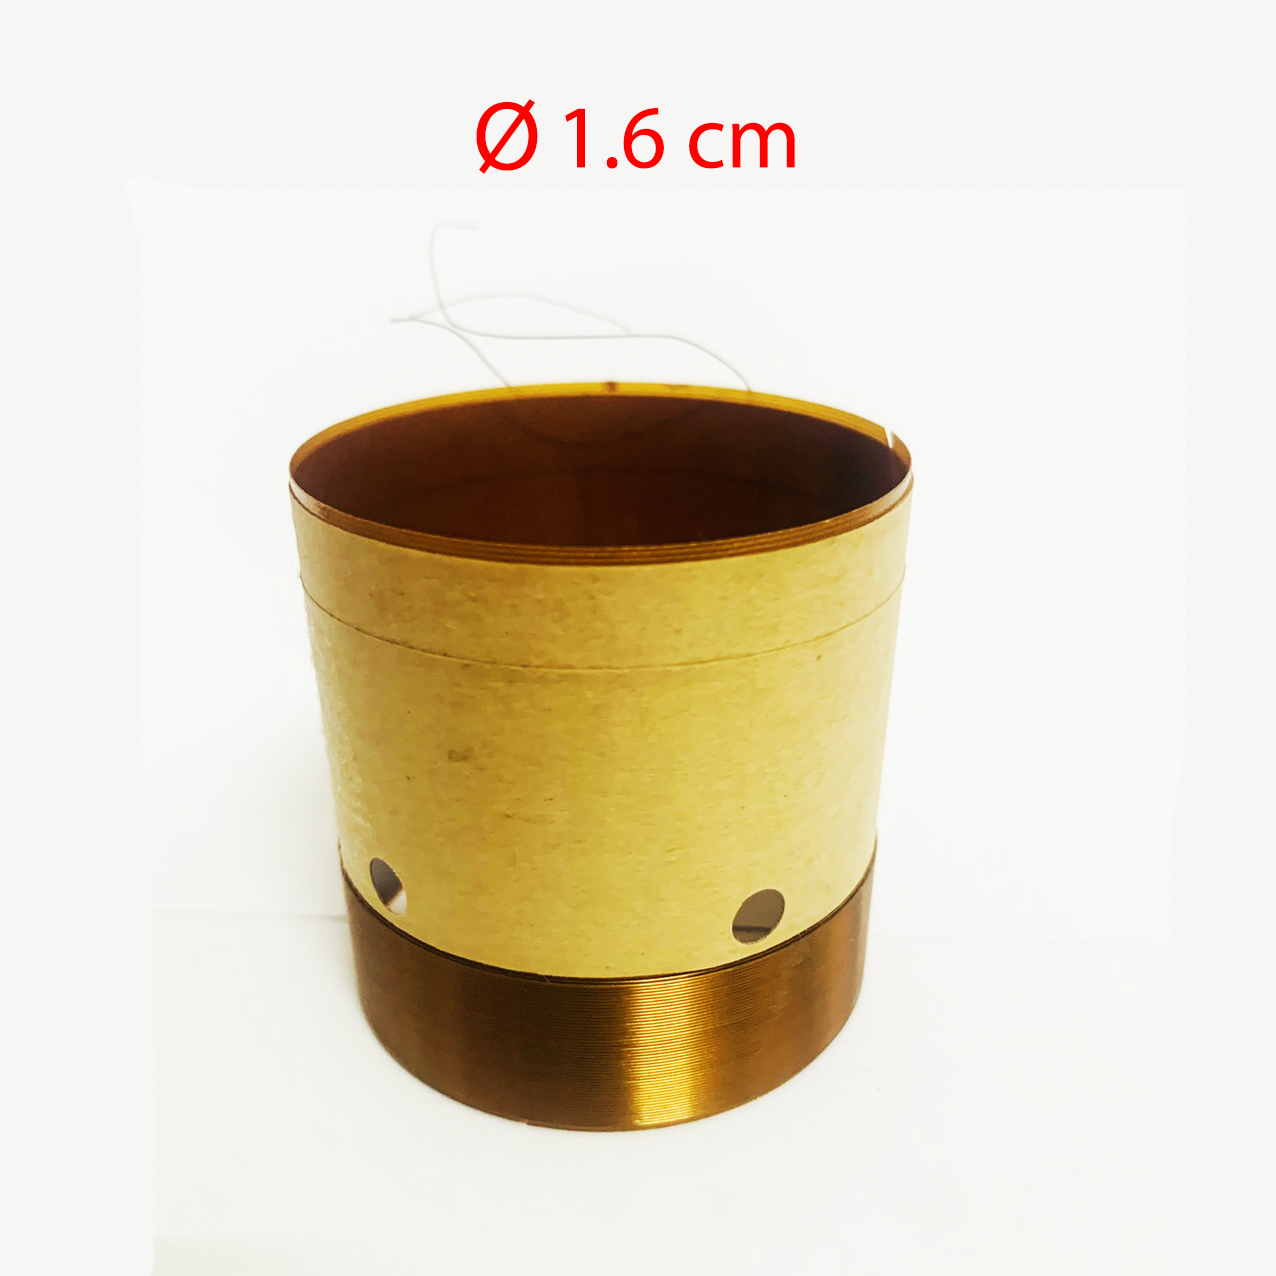 Coil loa 1.6 cm - côn loa 16 mm thay cho loa treble loại bền lõi đồng nguyên chất